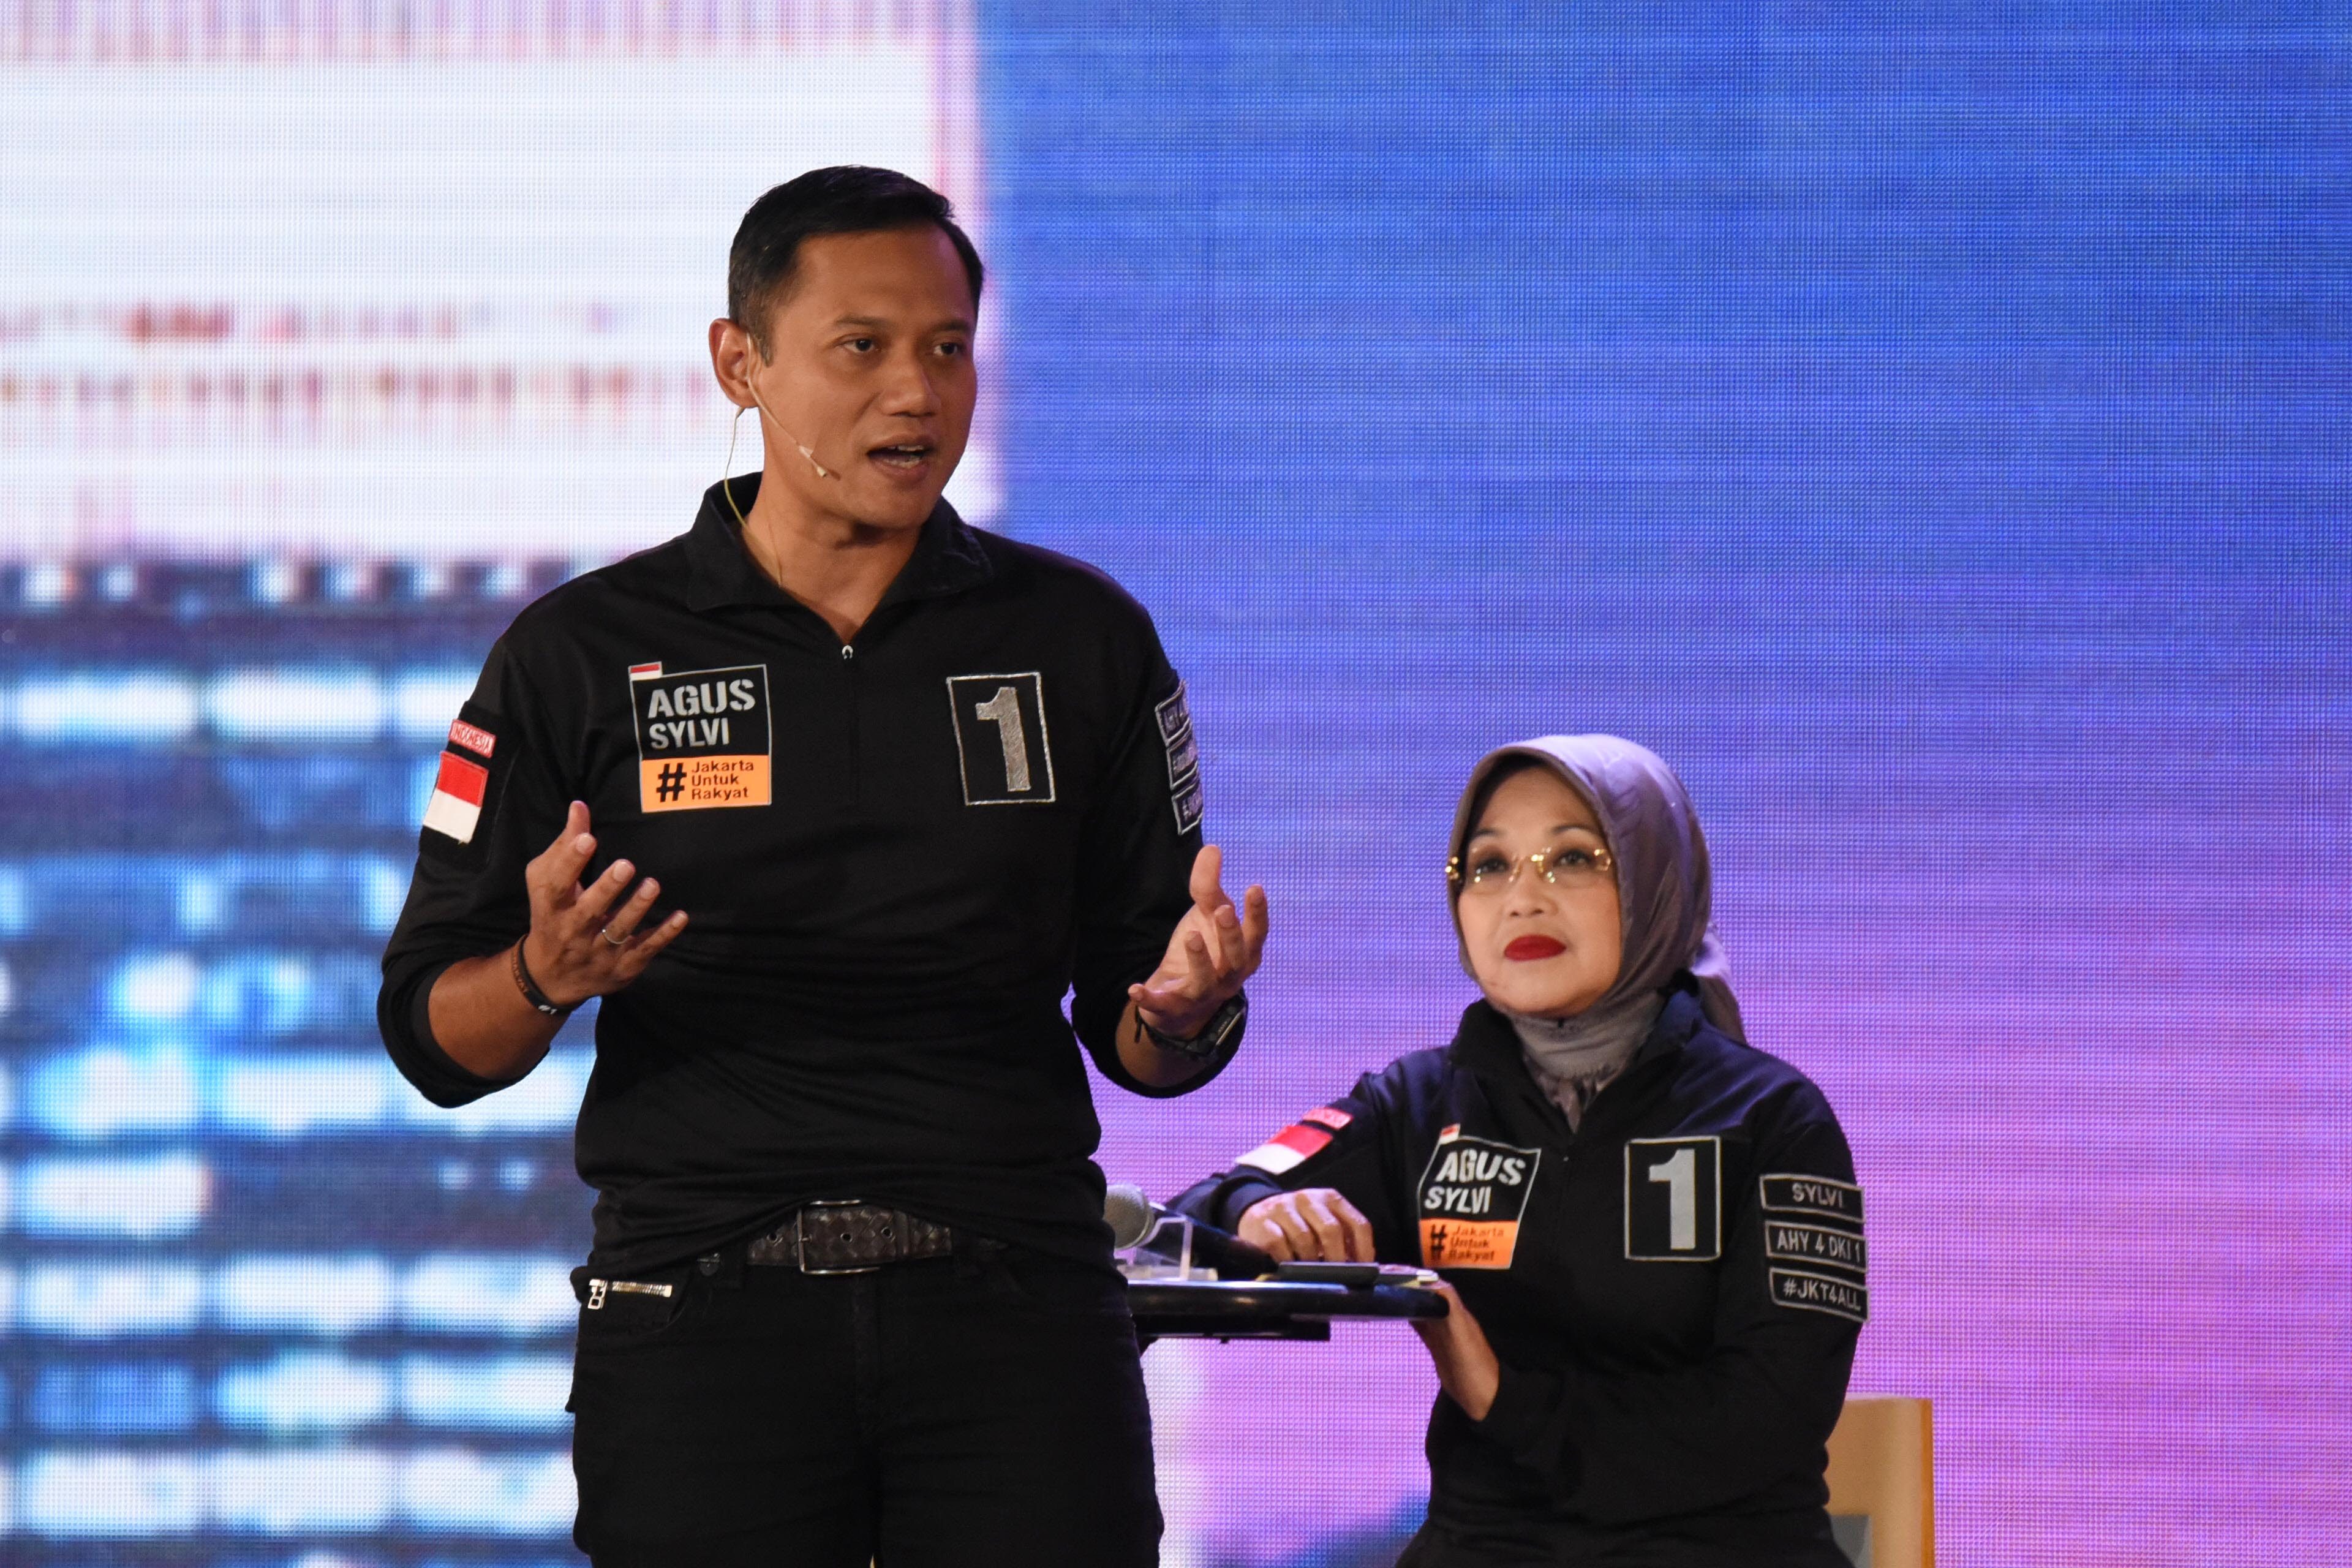 Cagub DKI Jakarta Agus Harimurti Yudhoyono (kiri) menjawab pertanyaan dalam debat ketiga Pilkada DKI Jakarta pada 10 Februari 2017. Foto oleh Akbar Nugroho Gumay/Antara 